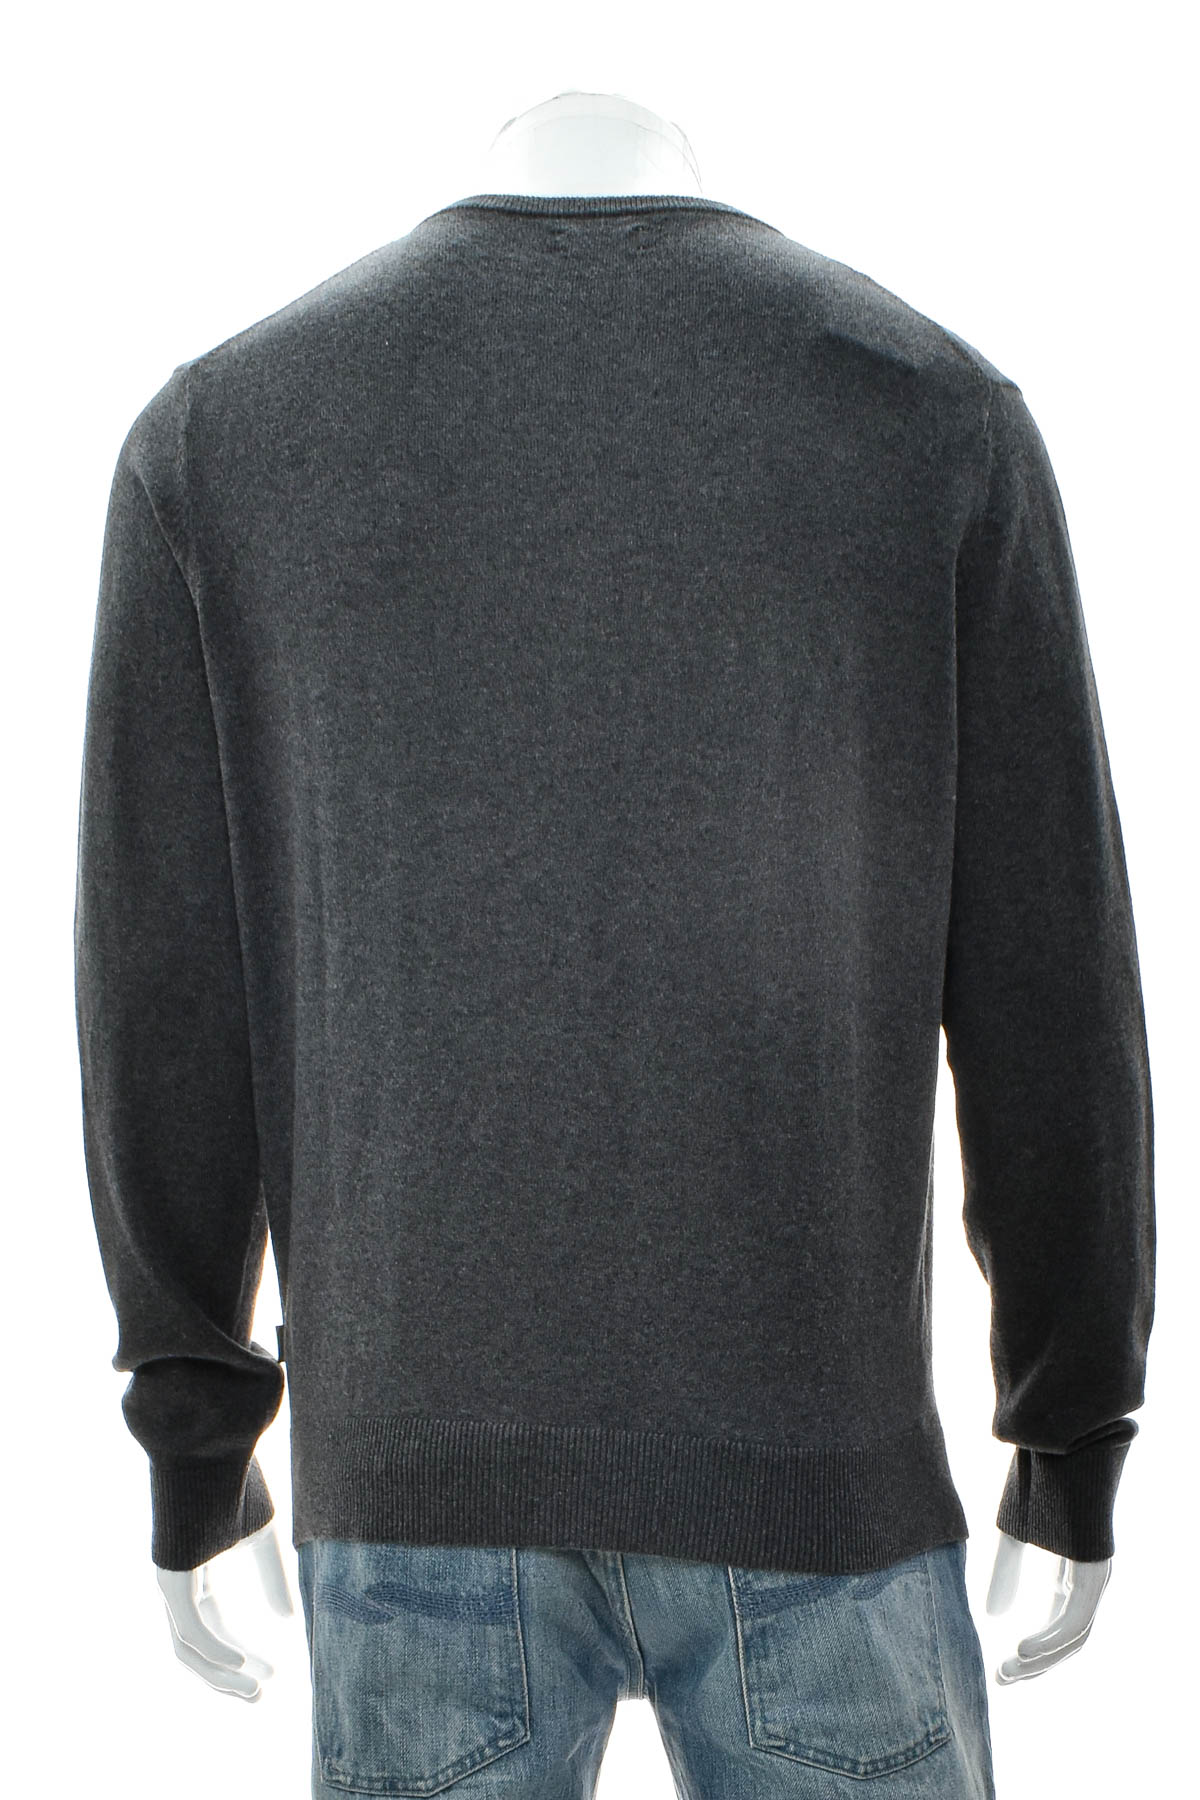 Men's sweater - McGregor - 1